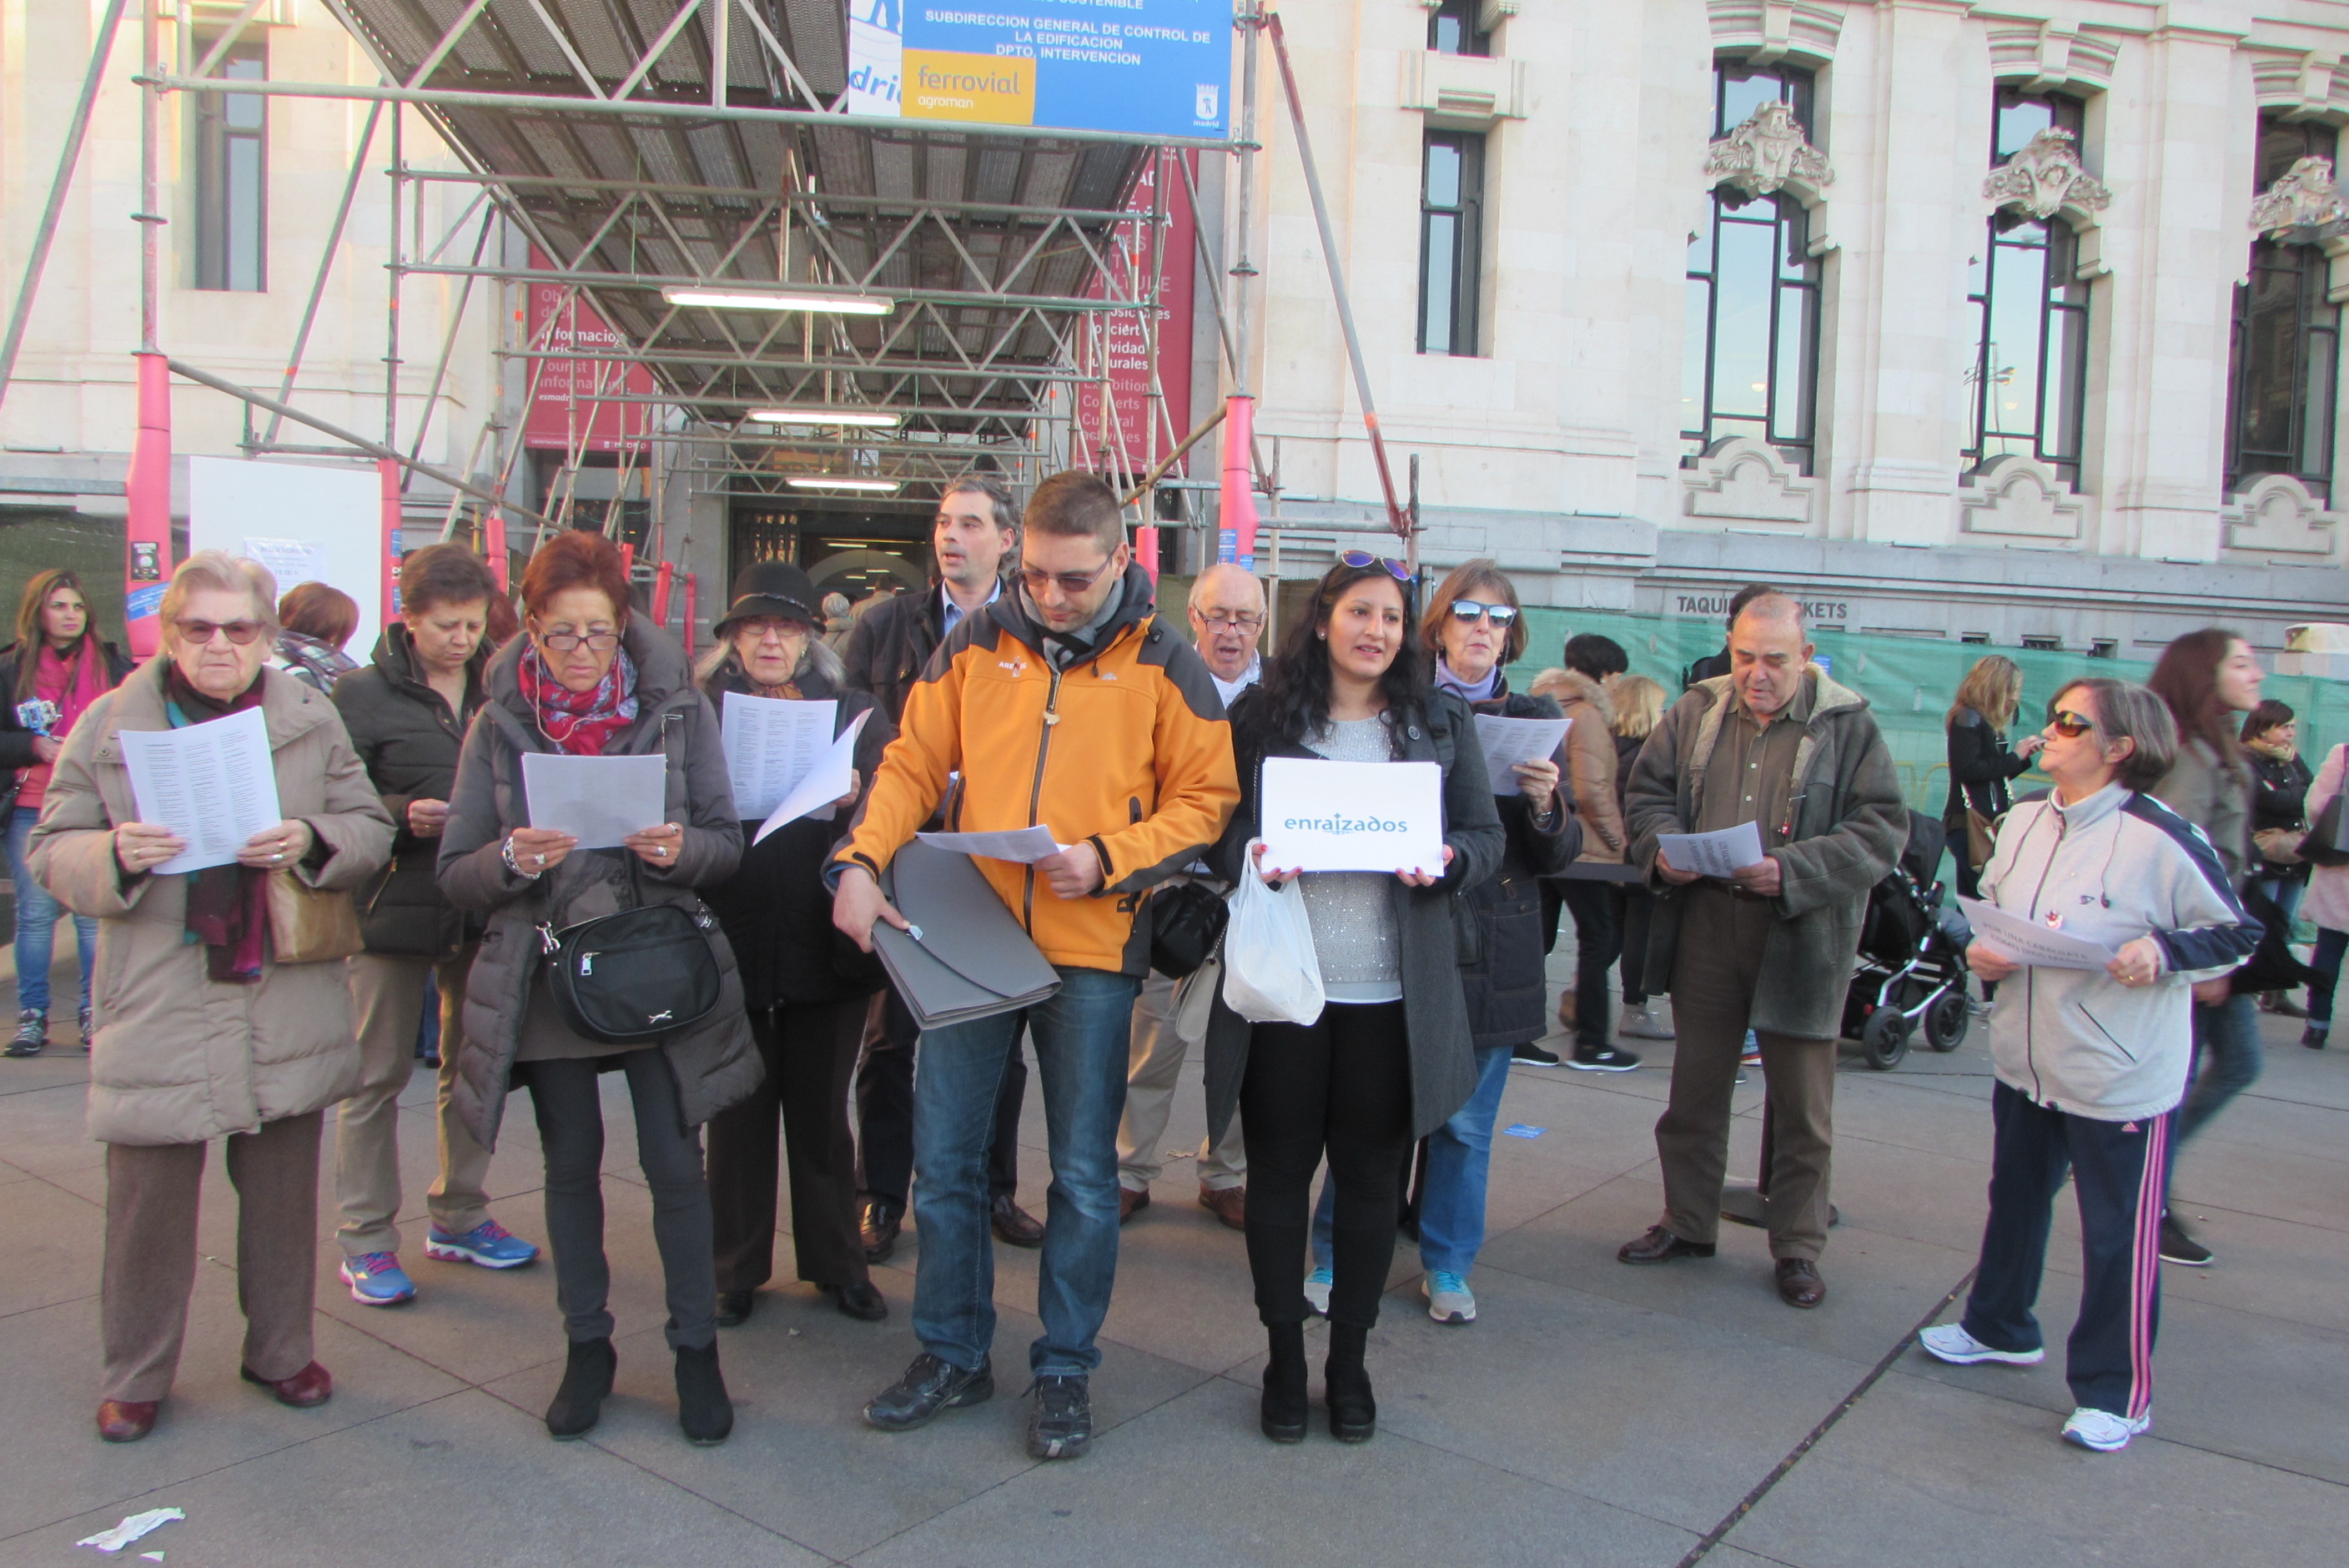 Enraizados canta Villancicos ante el Ayuntamiento de Madrid  para recordar a Carmena el verdadero sentido de la Navidad